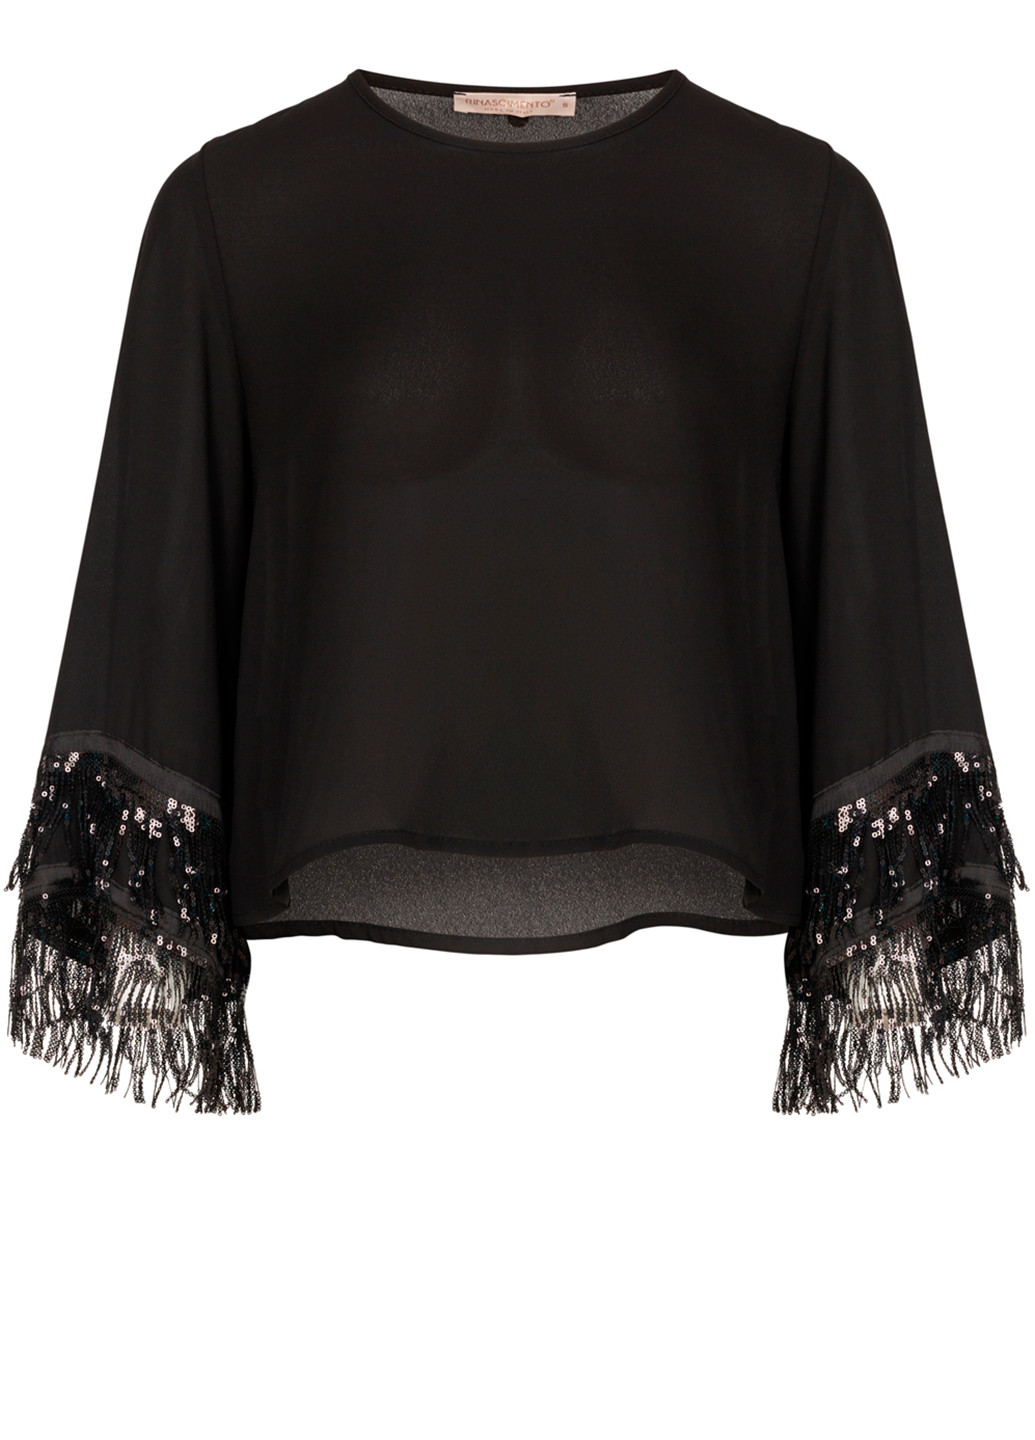 Чёрная женская шифоновая блузка с укорочеными рукавами Rinascimento